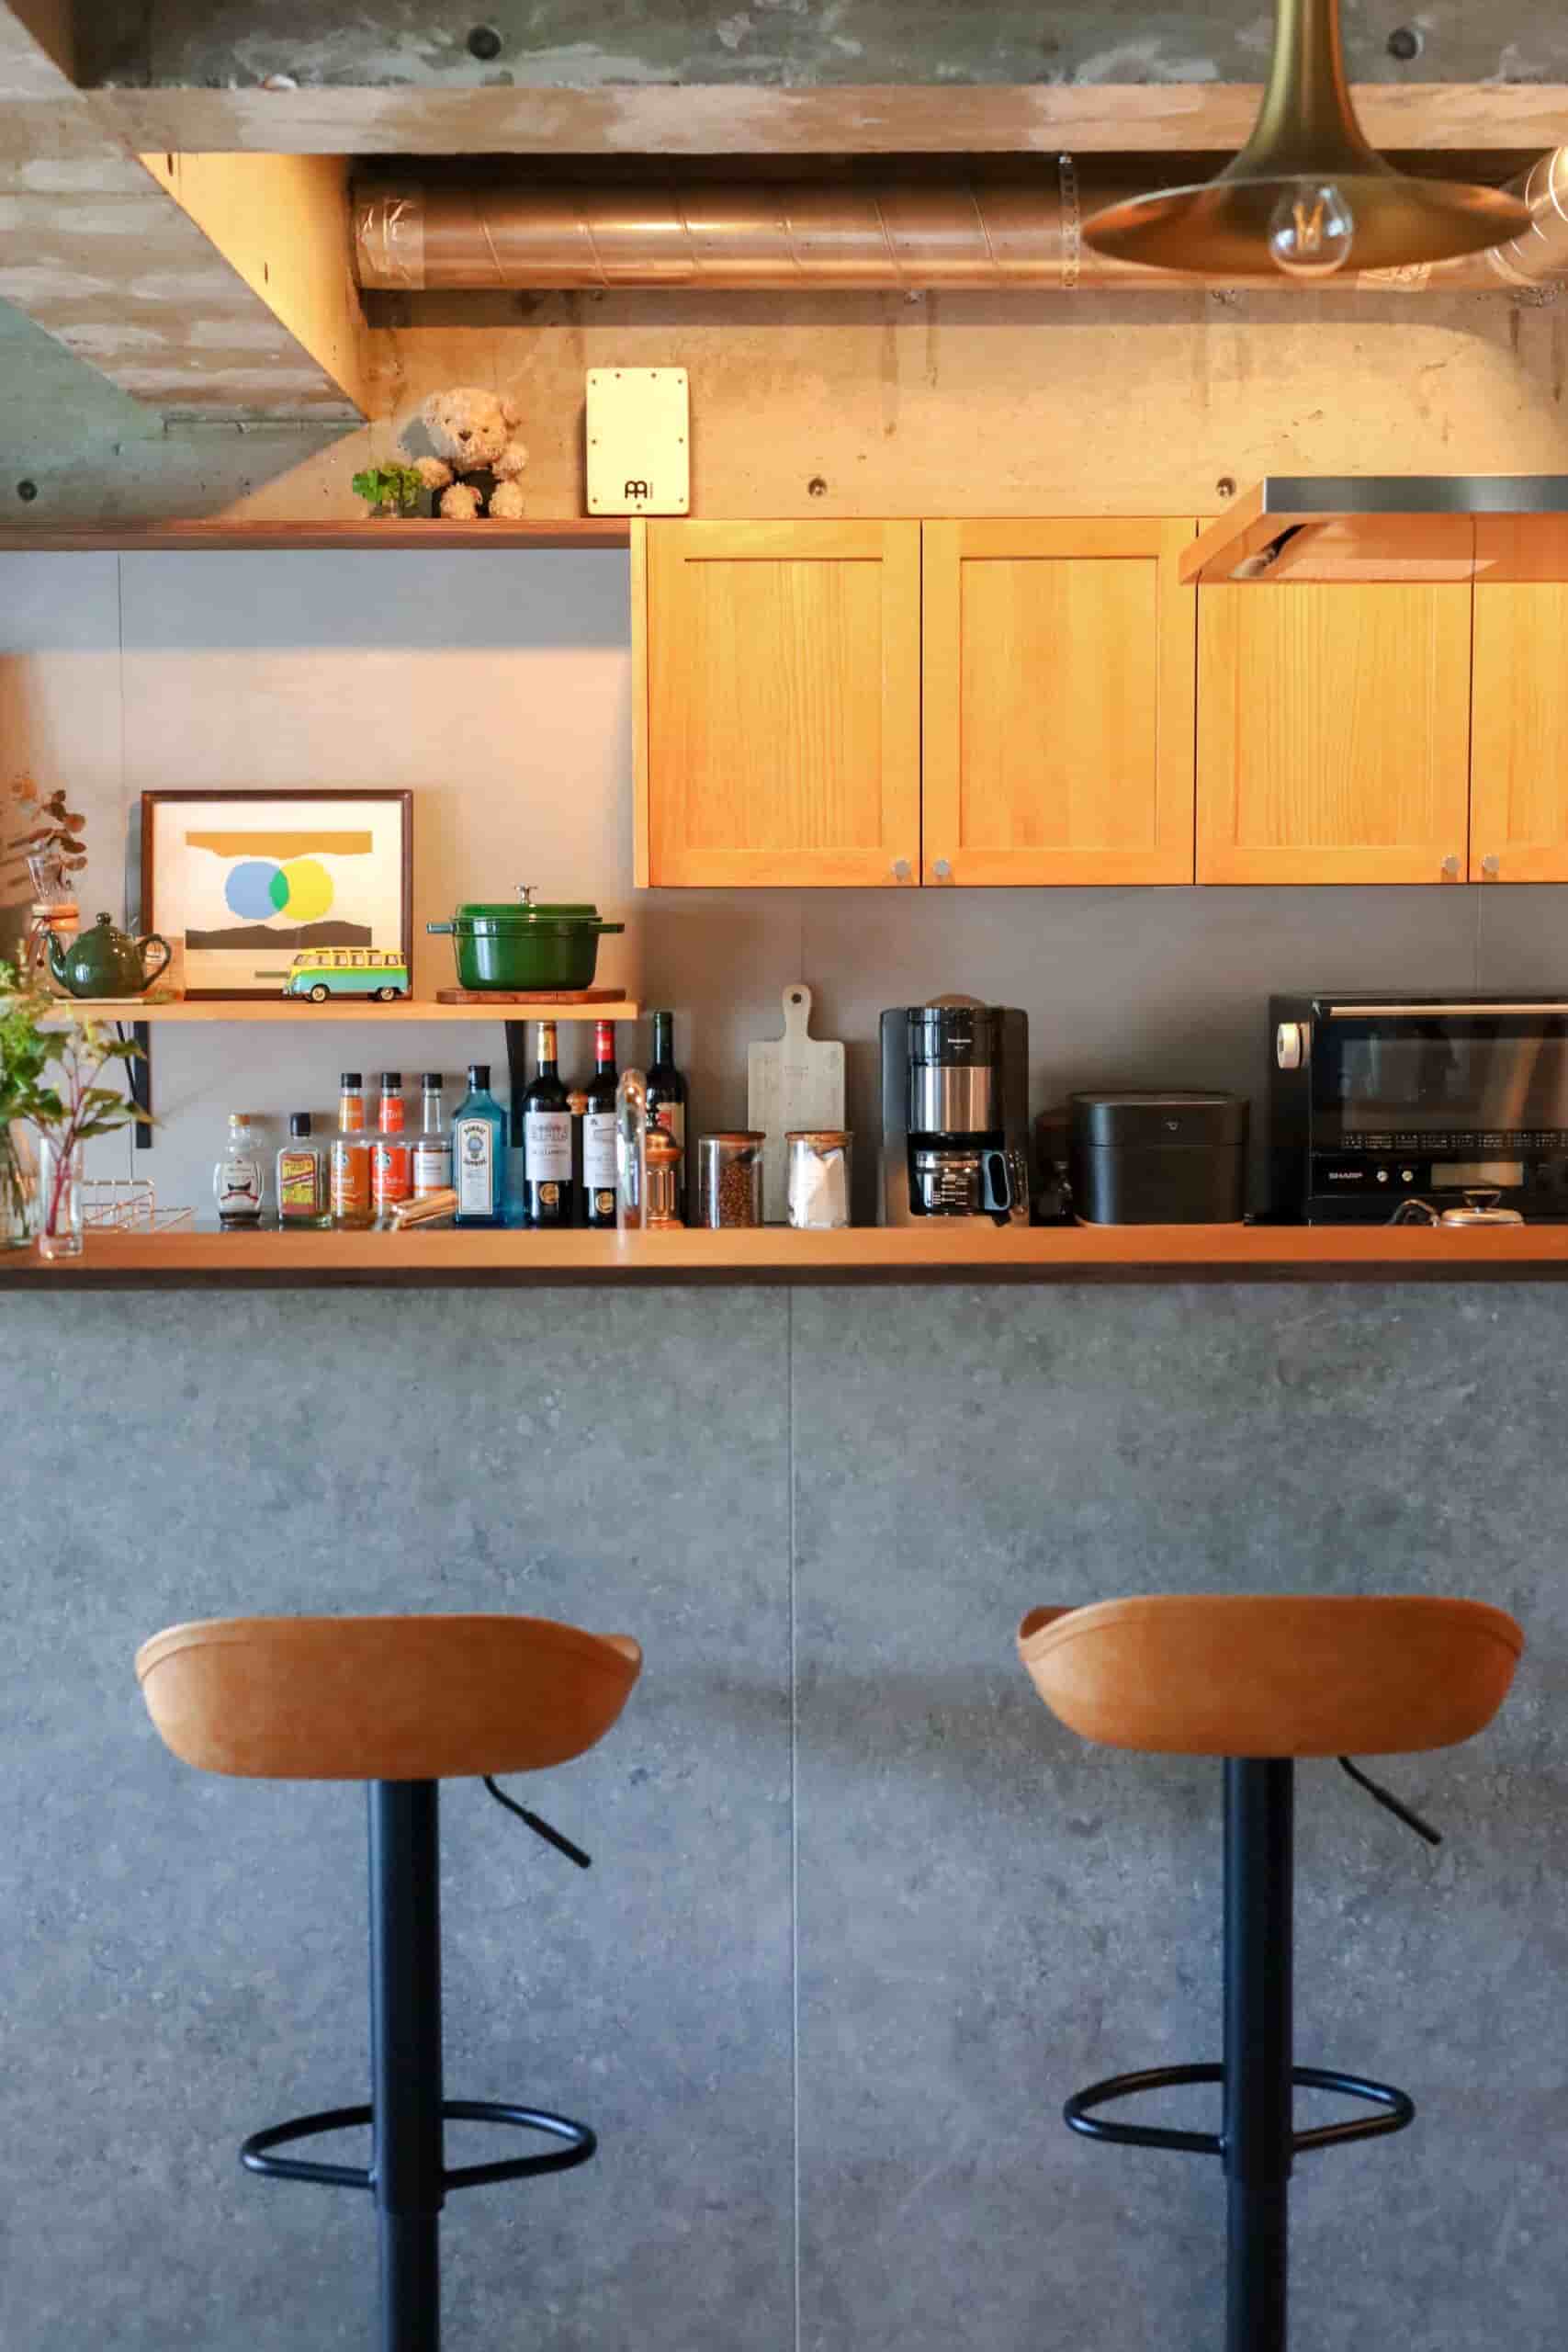 グレーの腰壁とウッディな天板のコントラストが印象的なキッチンカウンター